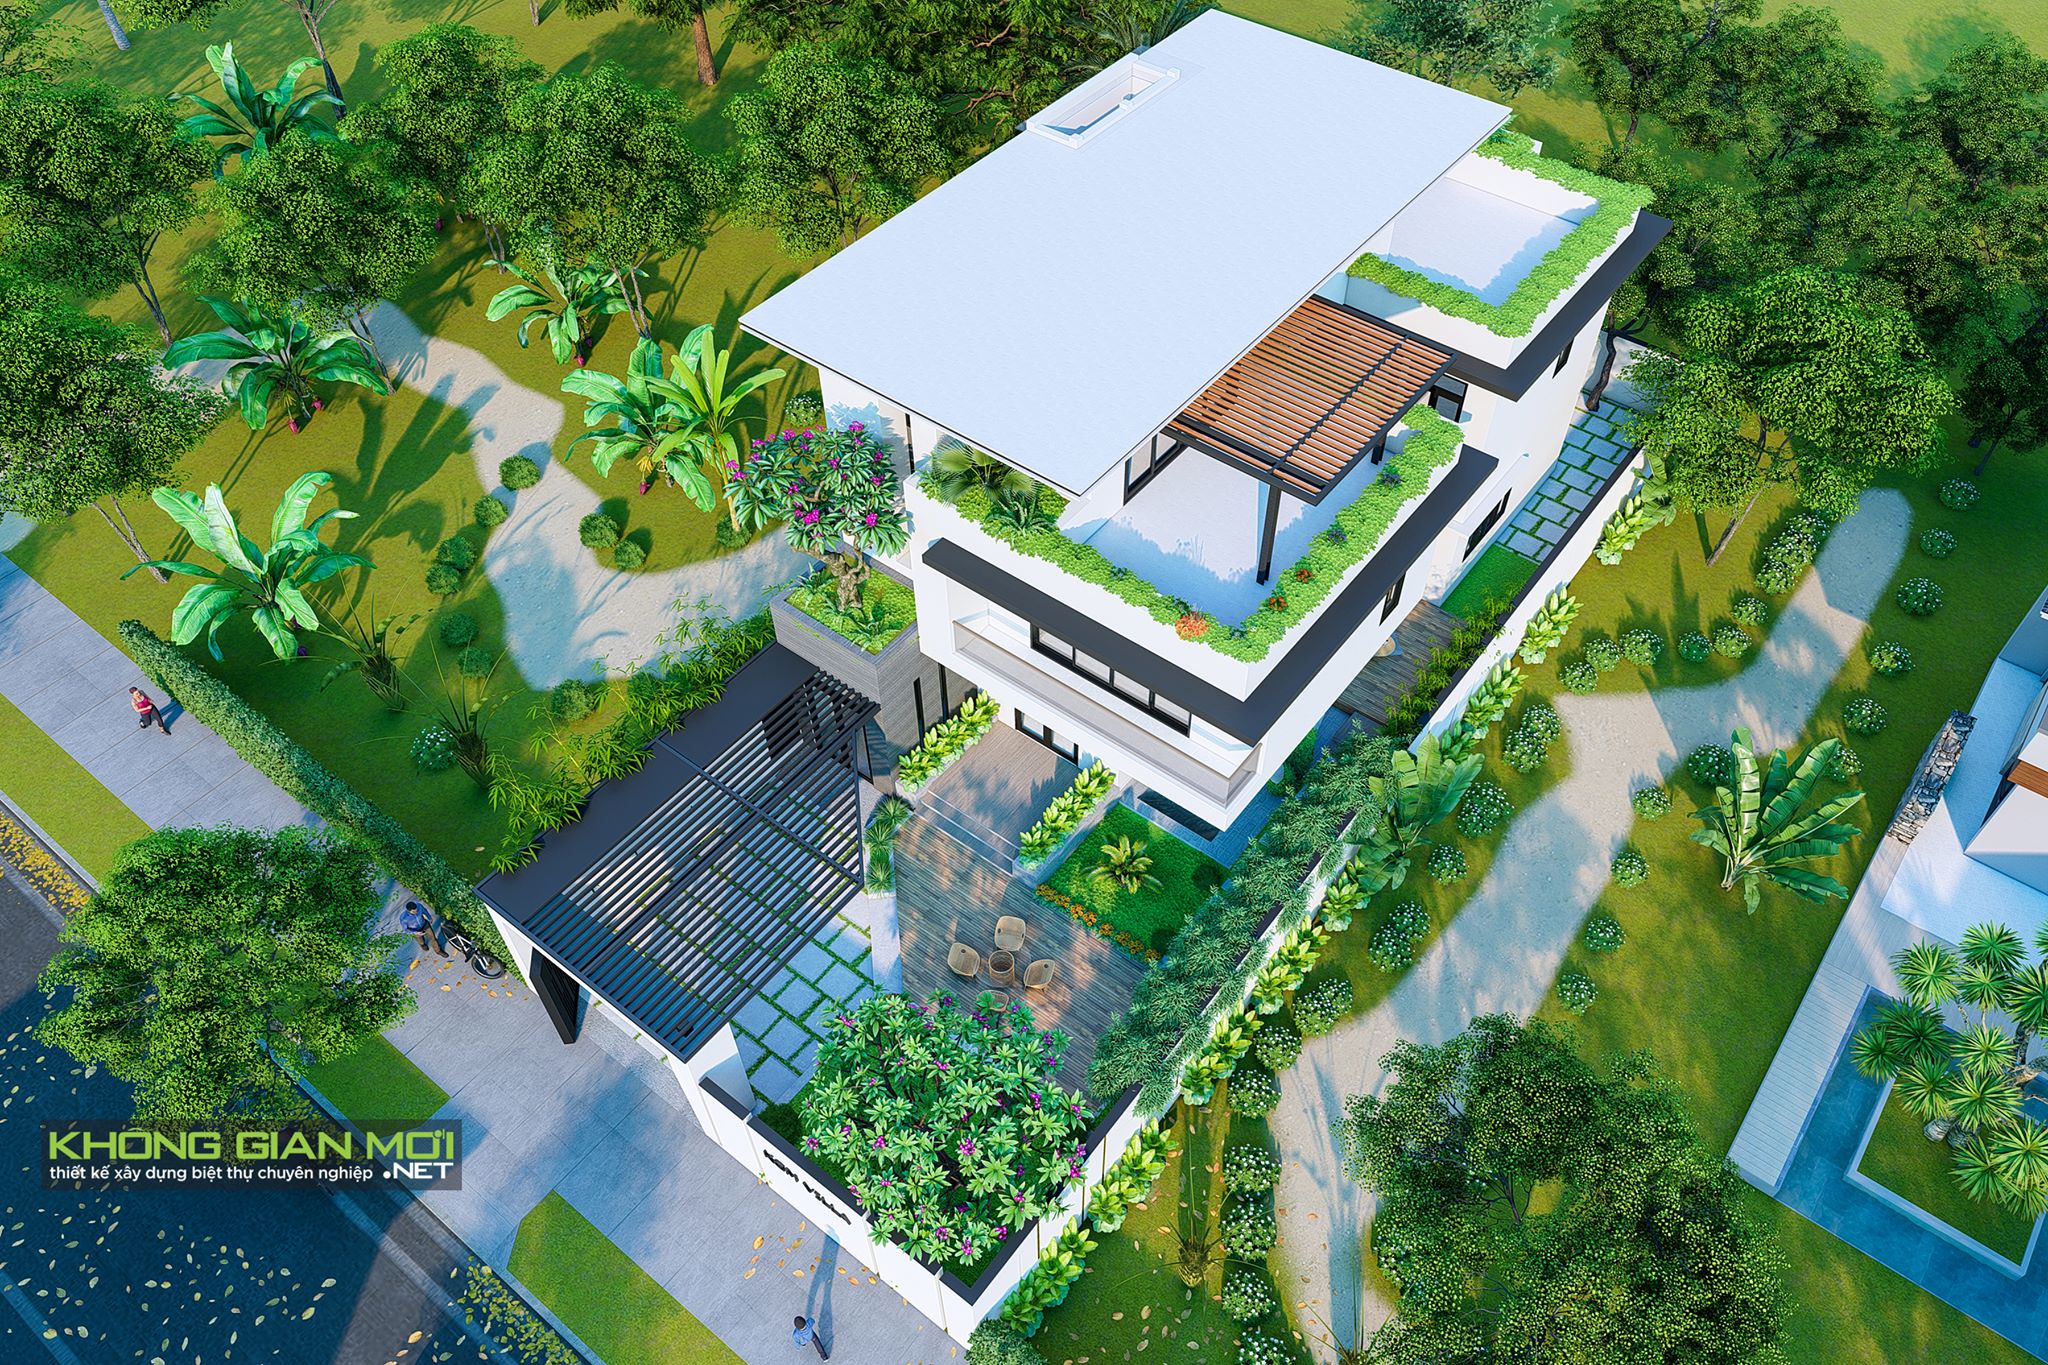 thiết kế Biệt Thự 3 tầng tại Khánh Hòa THIẾT KẾ XÂY DỰNG BIỆT THỰ HIỆN ĐẠI - NHA TRANG 1 1552607234